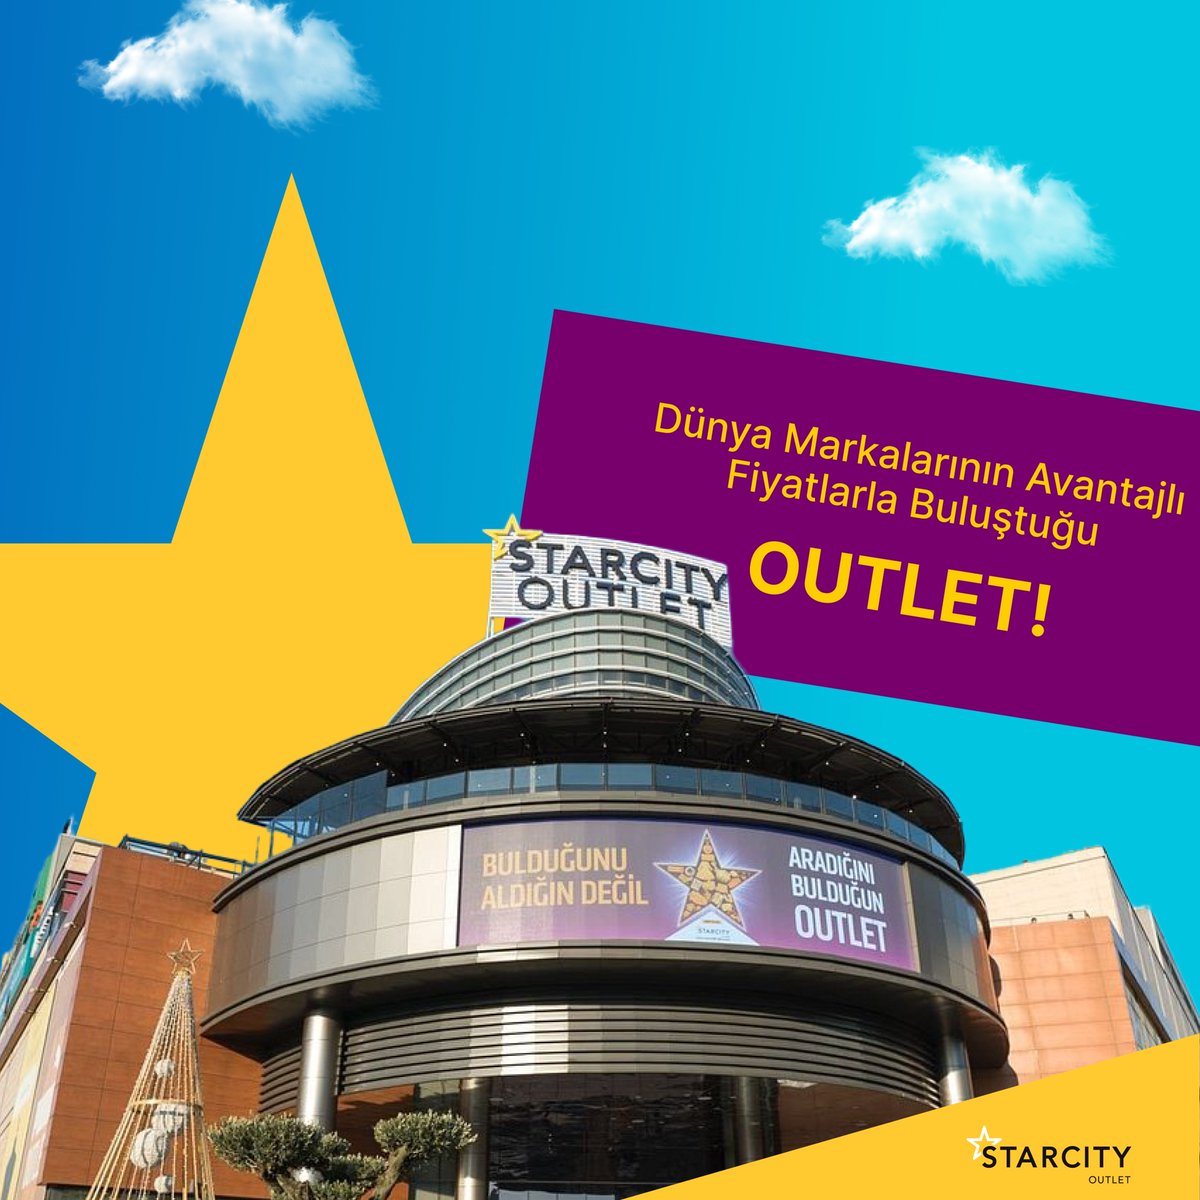 Fırsatlarla dolu “Starcity Outlet” şehrin merkezinde sizleri bekliyor! 🌟 #starcityoutlet #indirim #sömestir